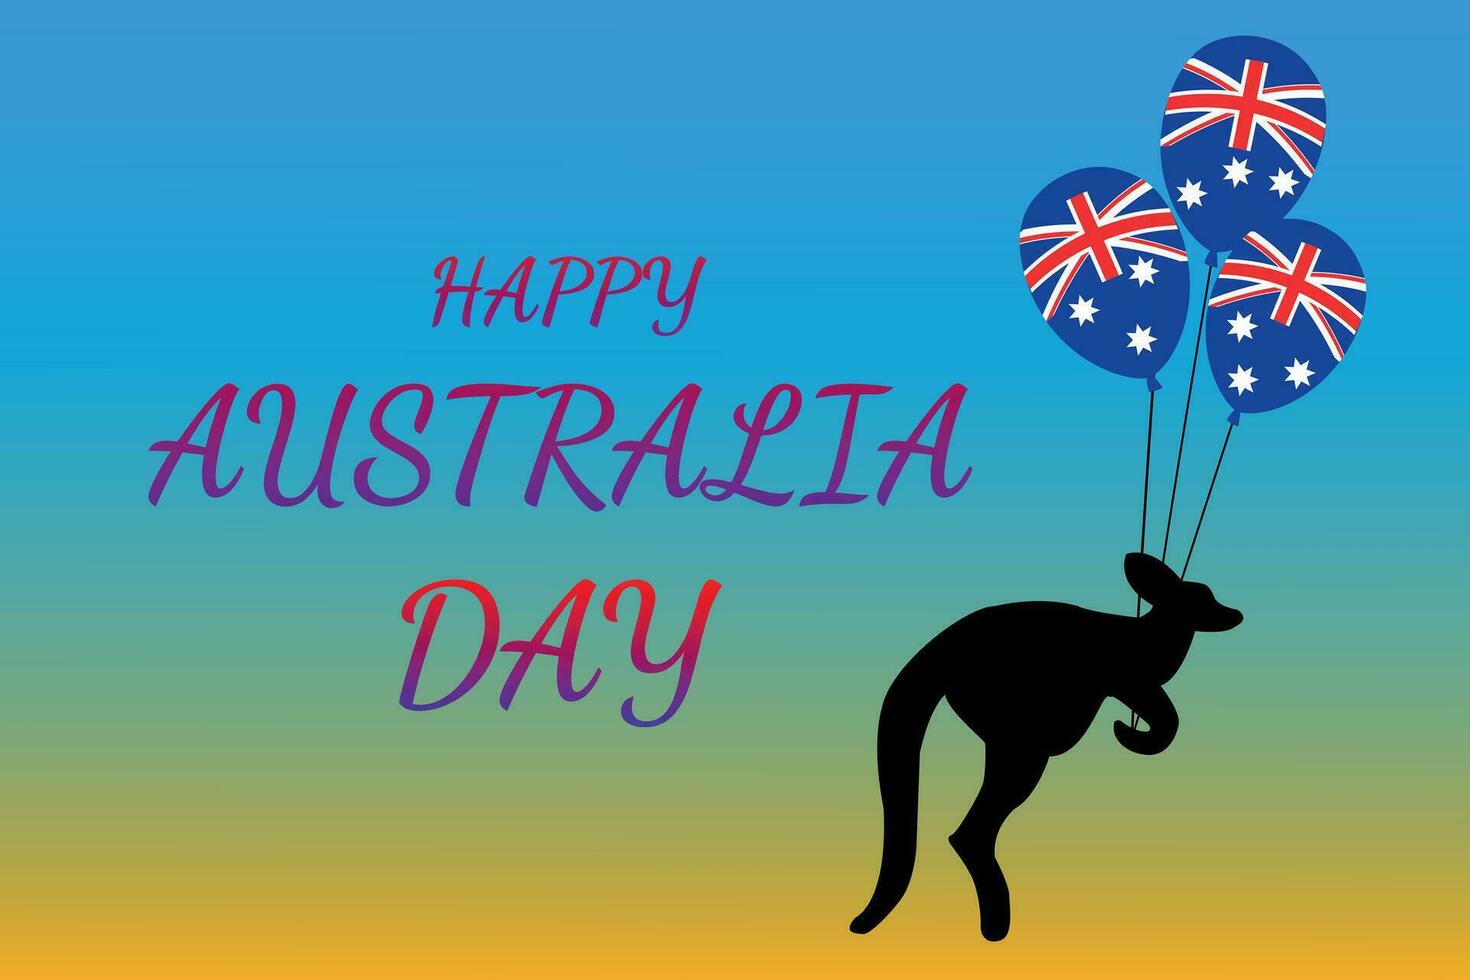 Austrália dia é célebre anualmente em janeiro 26º. bandeira ou poster com Kinguru e balões com a bandeira do Austrália. vetor ilustração.